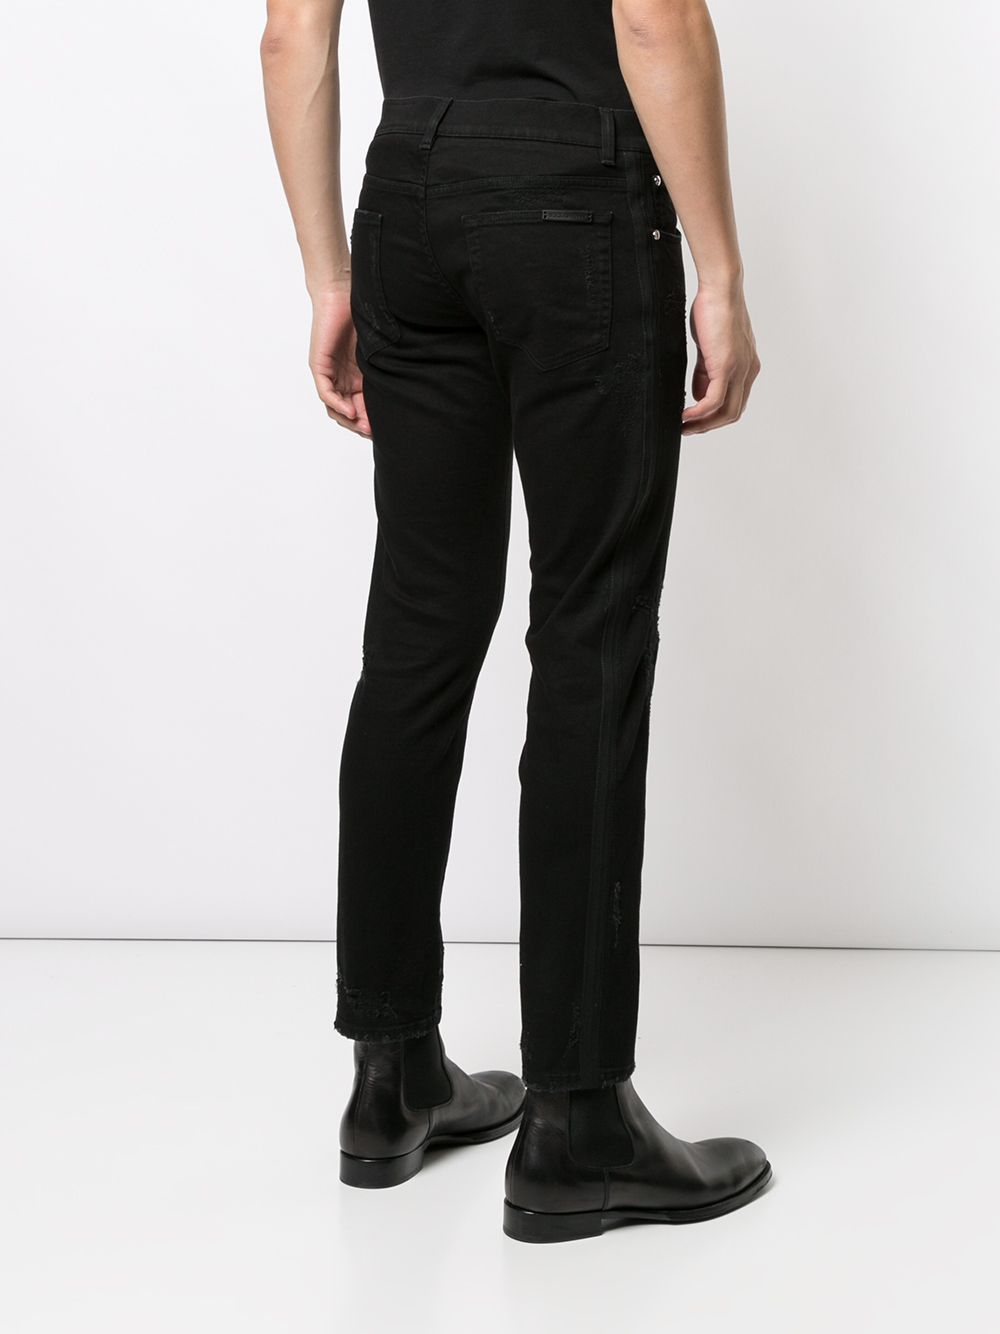 фото Dolce & gabbana джинсы скинни с вышитым логотипом